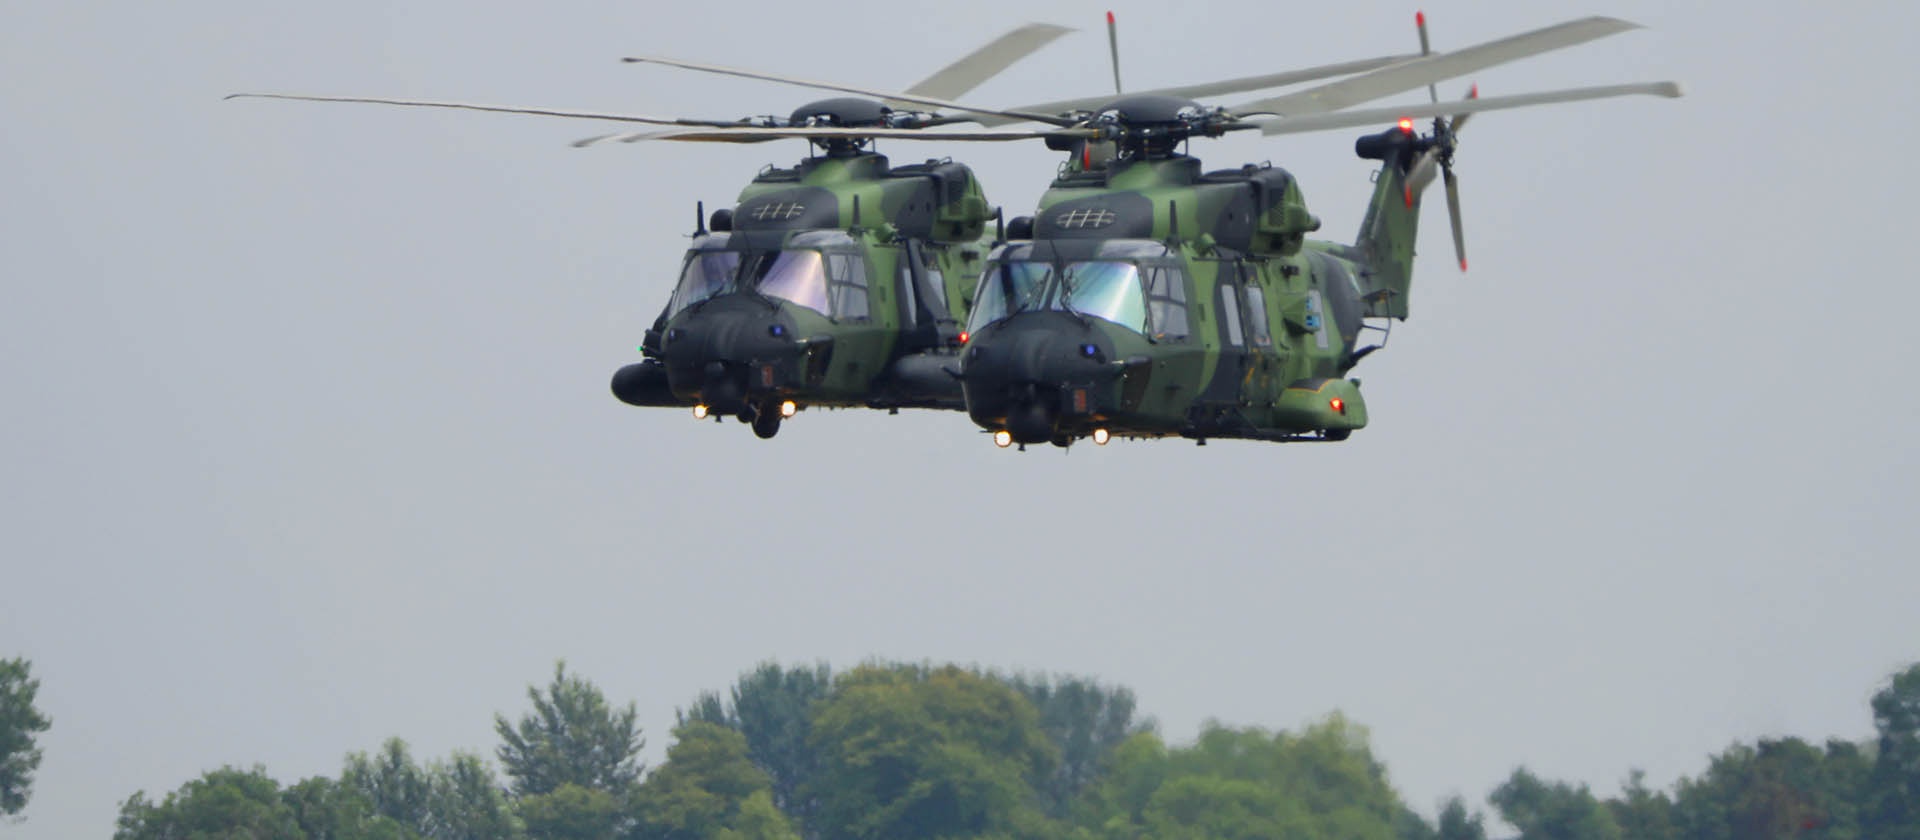 Дорог, ненадежен, капризен: о чем не прочитаешь в рекламных буклетах тактического вертолета NH90